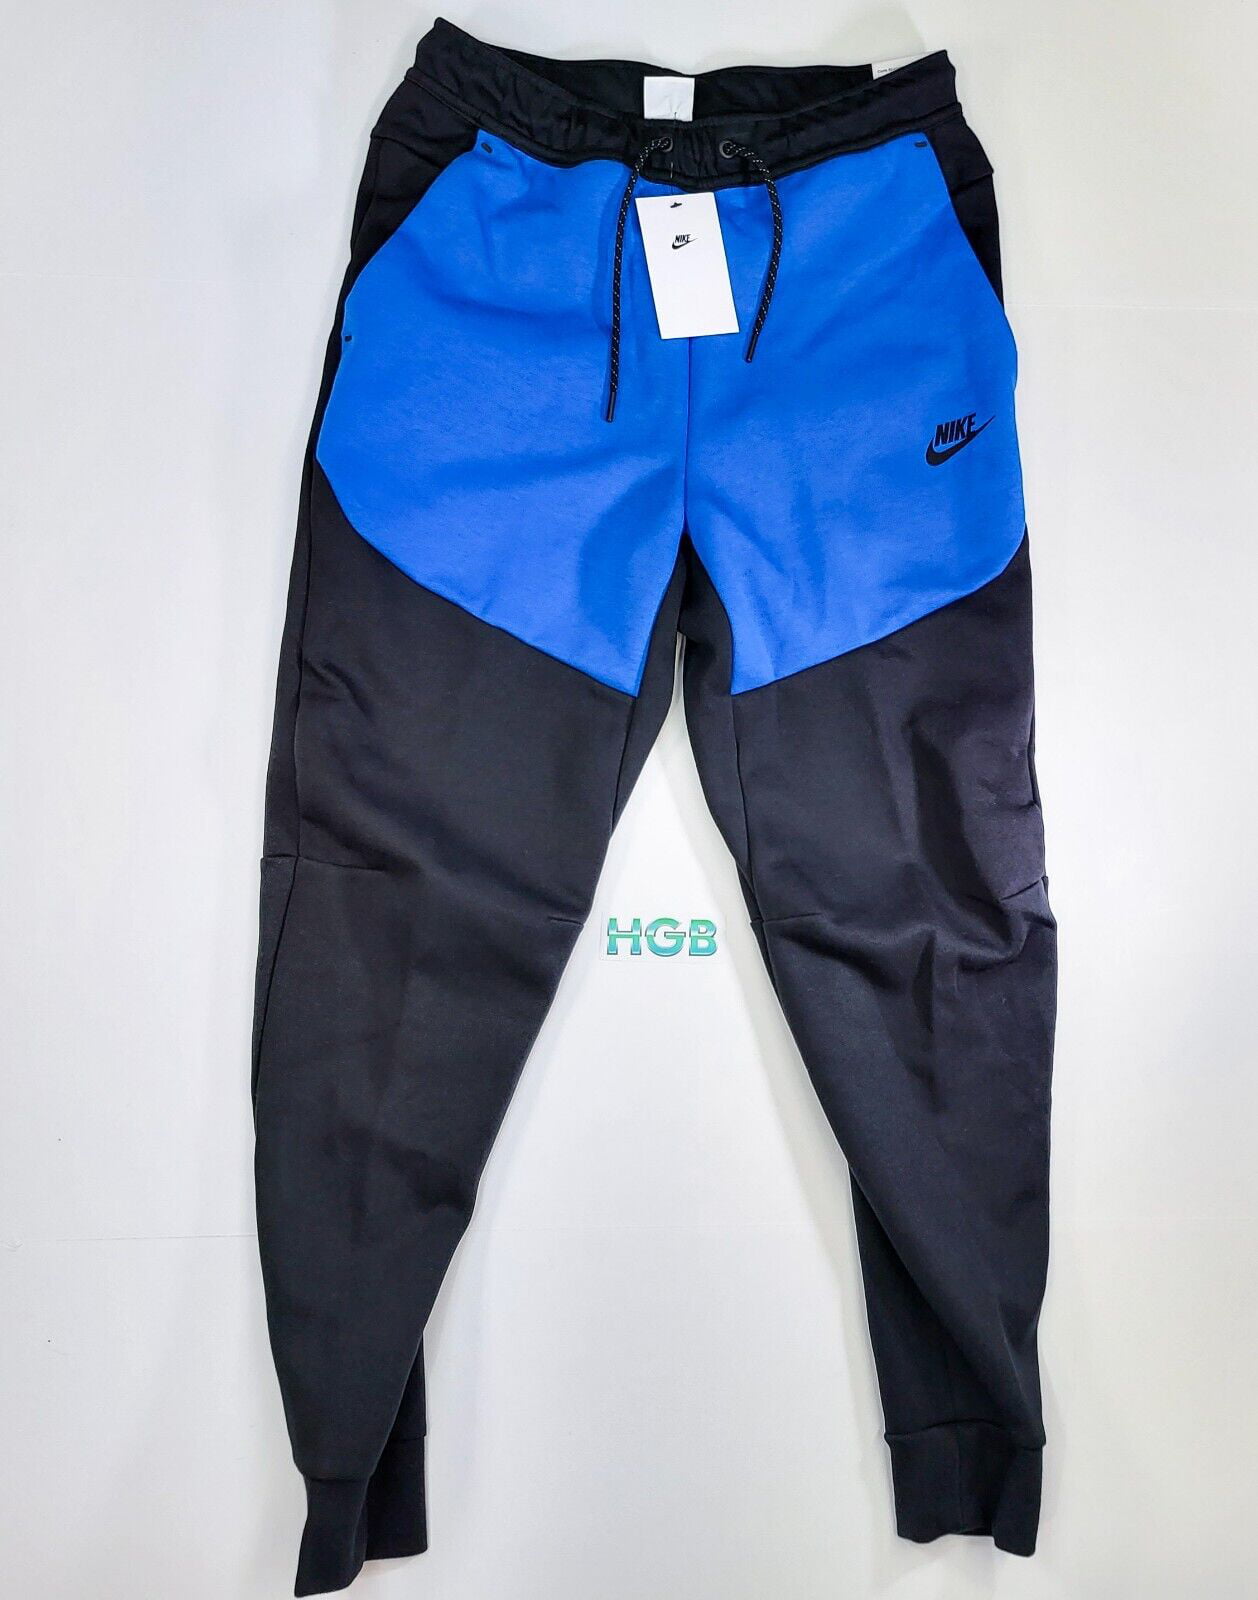 Nike Sportswear Tech Fleece Joggers Men's Pant Black Blue CU4495-017 - Walmart.com